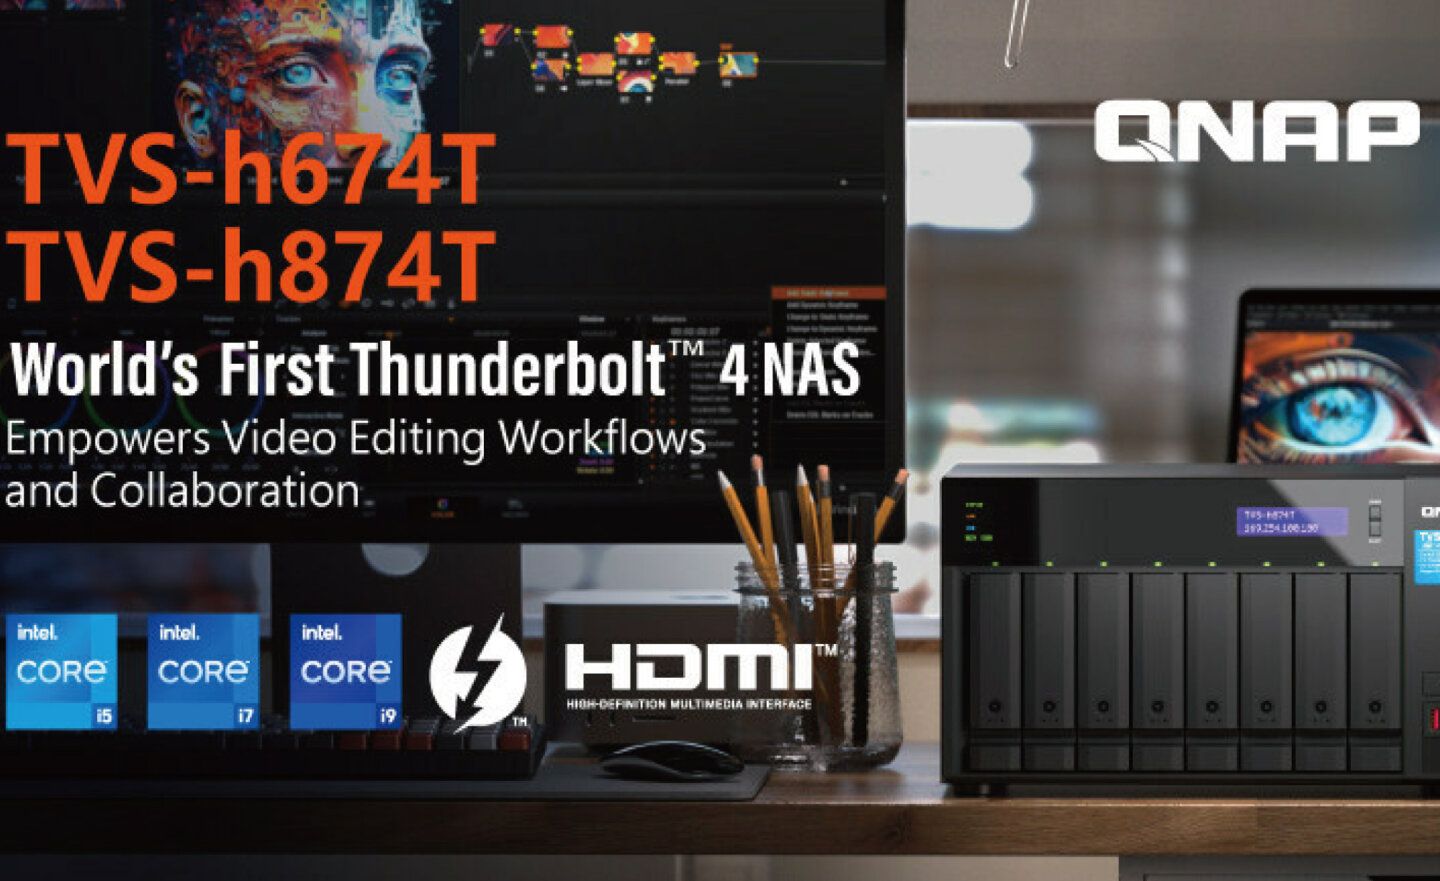 QNAP 推出 Thunderbolt 4 NAS，搭載第 12 代 Intel Core i5、i7、i9 處理器